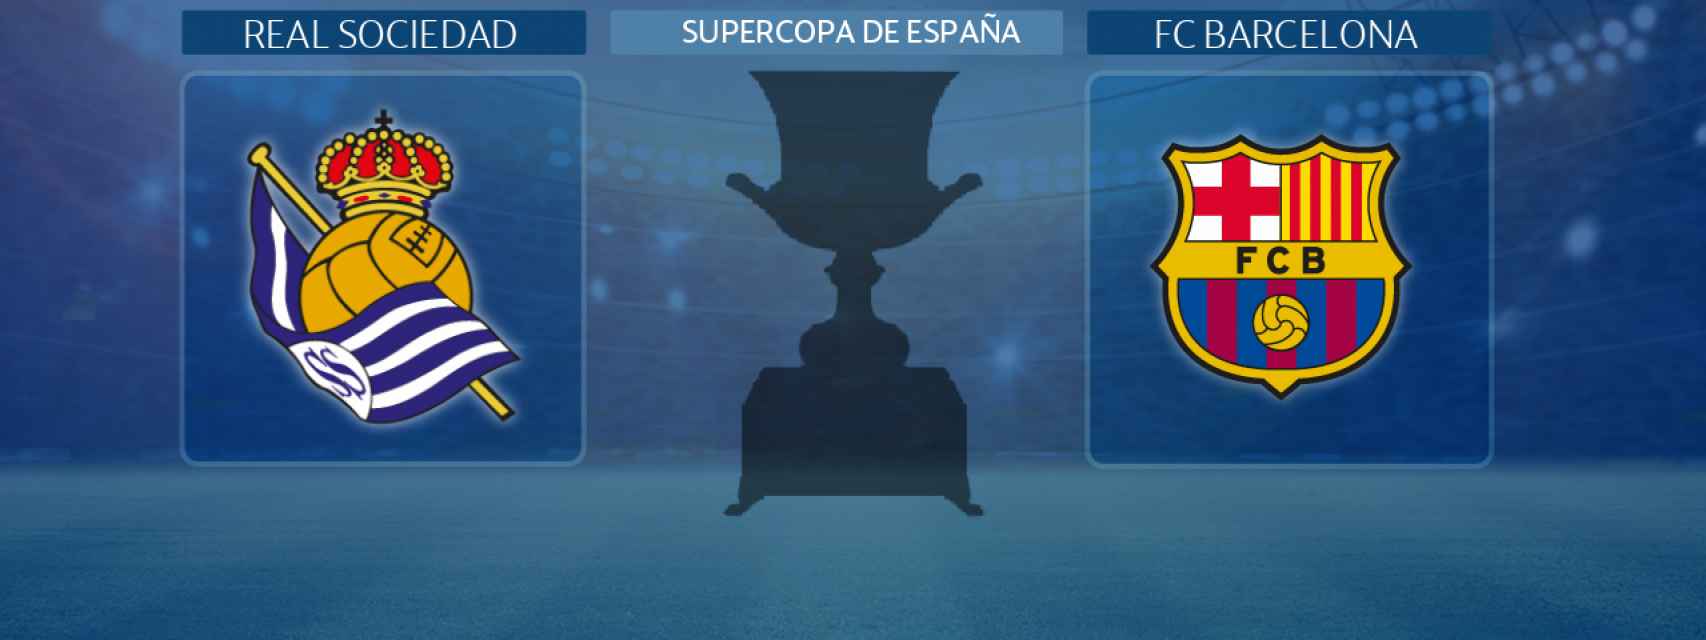 Real Sociedad - FC Barcelona, partido de la Supercopa de España